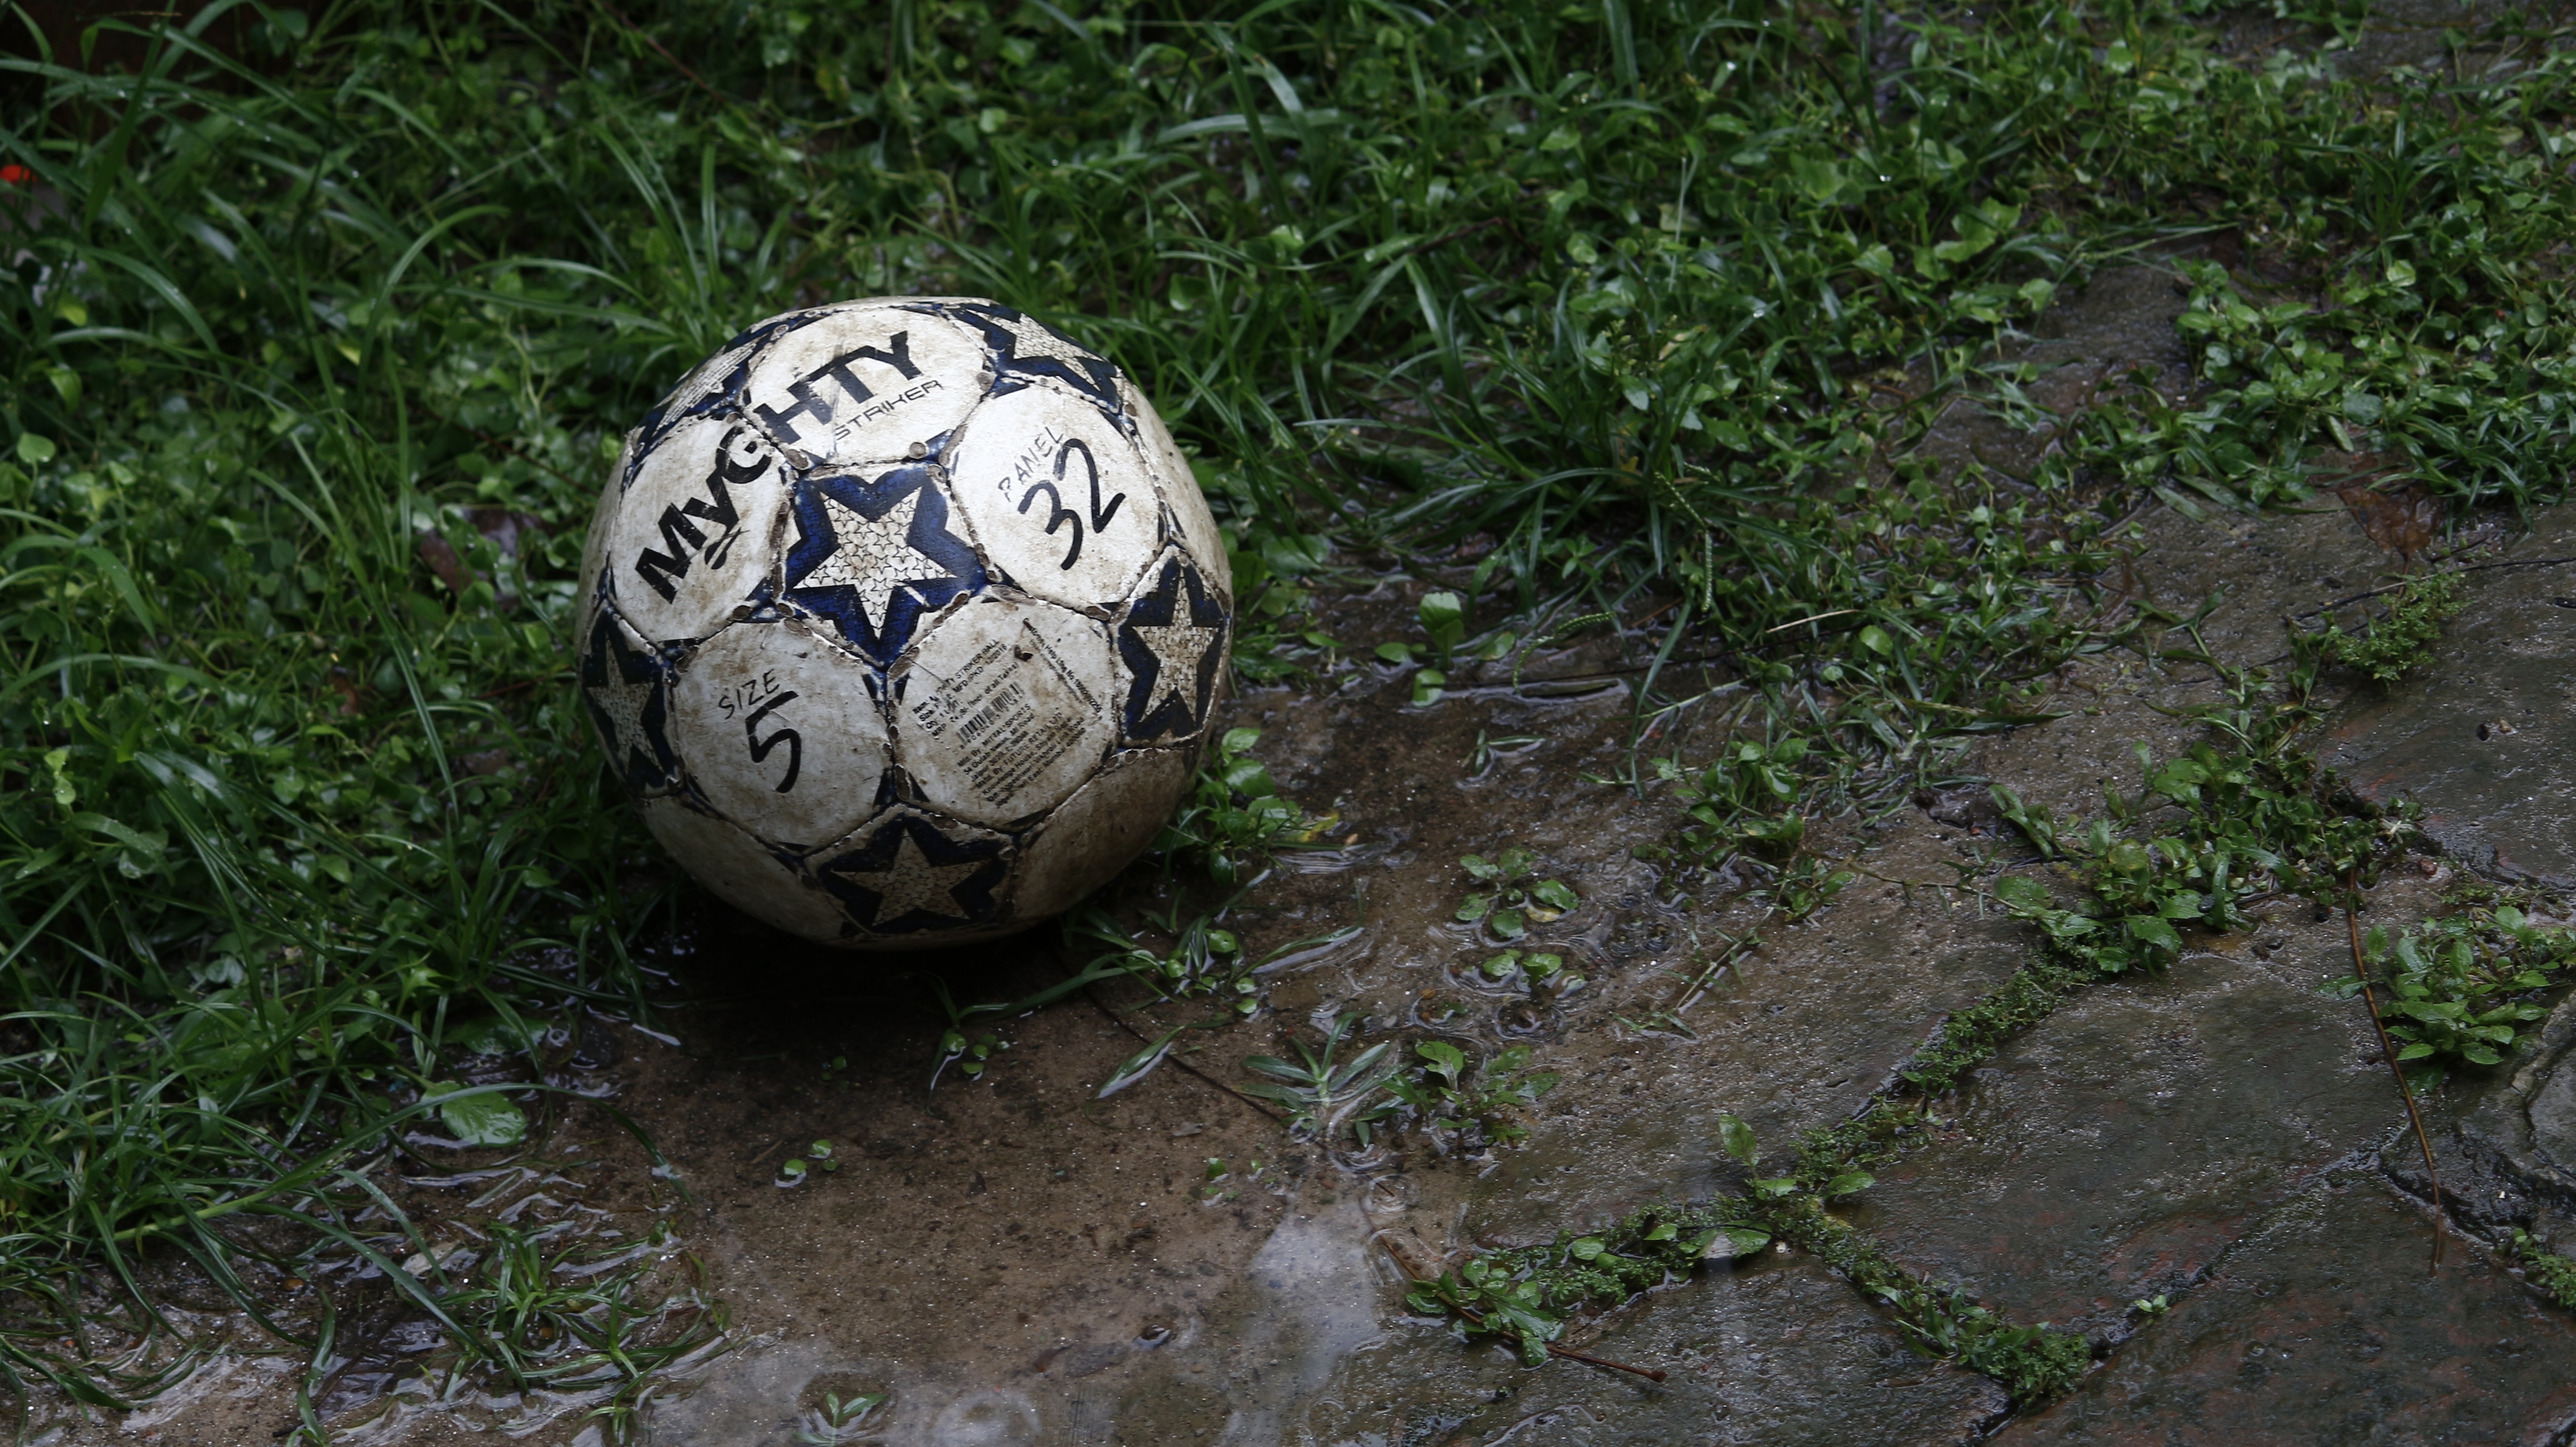 1920x1080 Background football, sports, grass, ball, mud, dirt